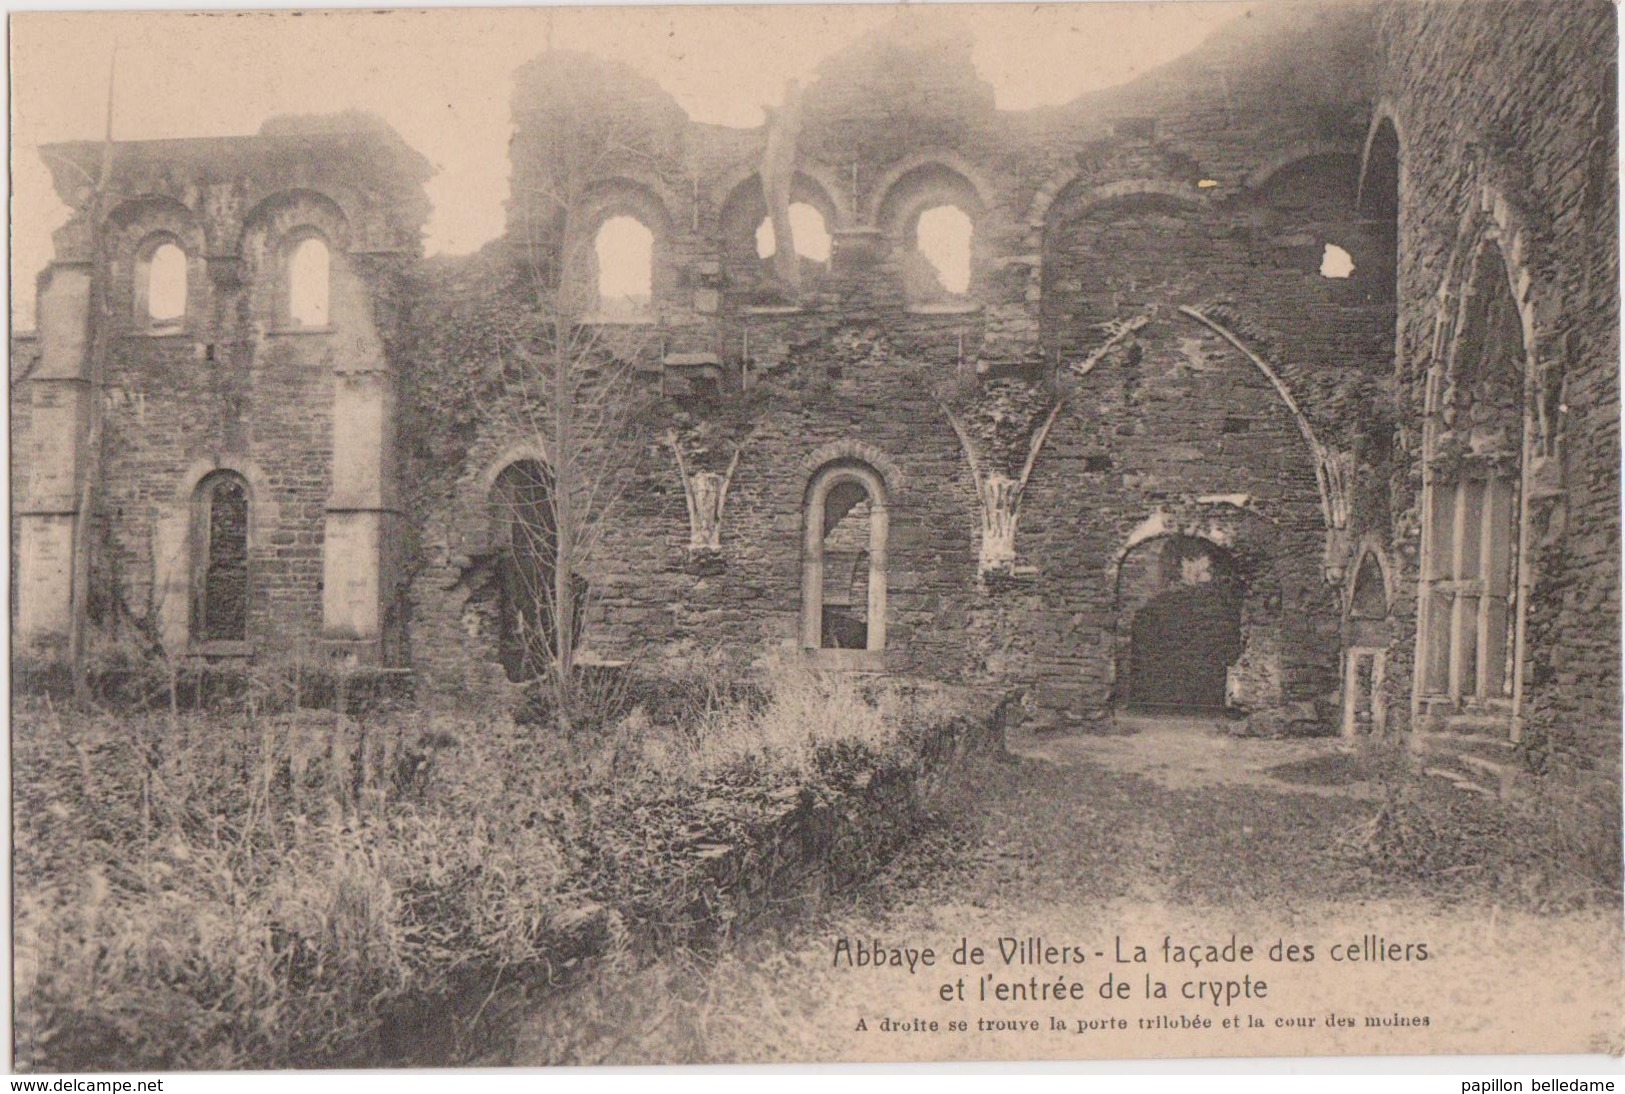 Abbaye de Villers La Ville   Lot de 7 cartes